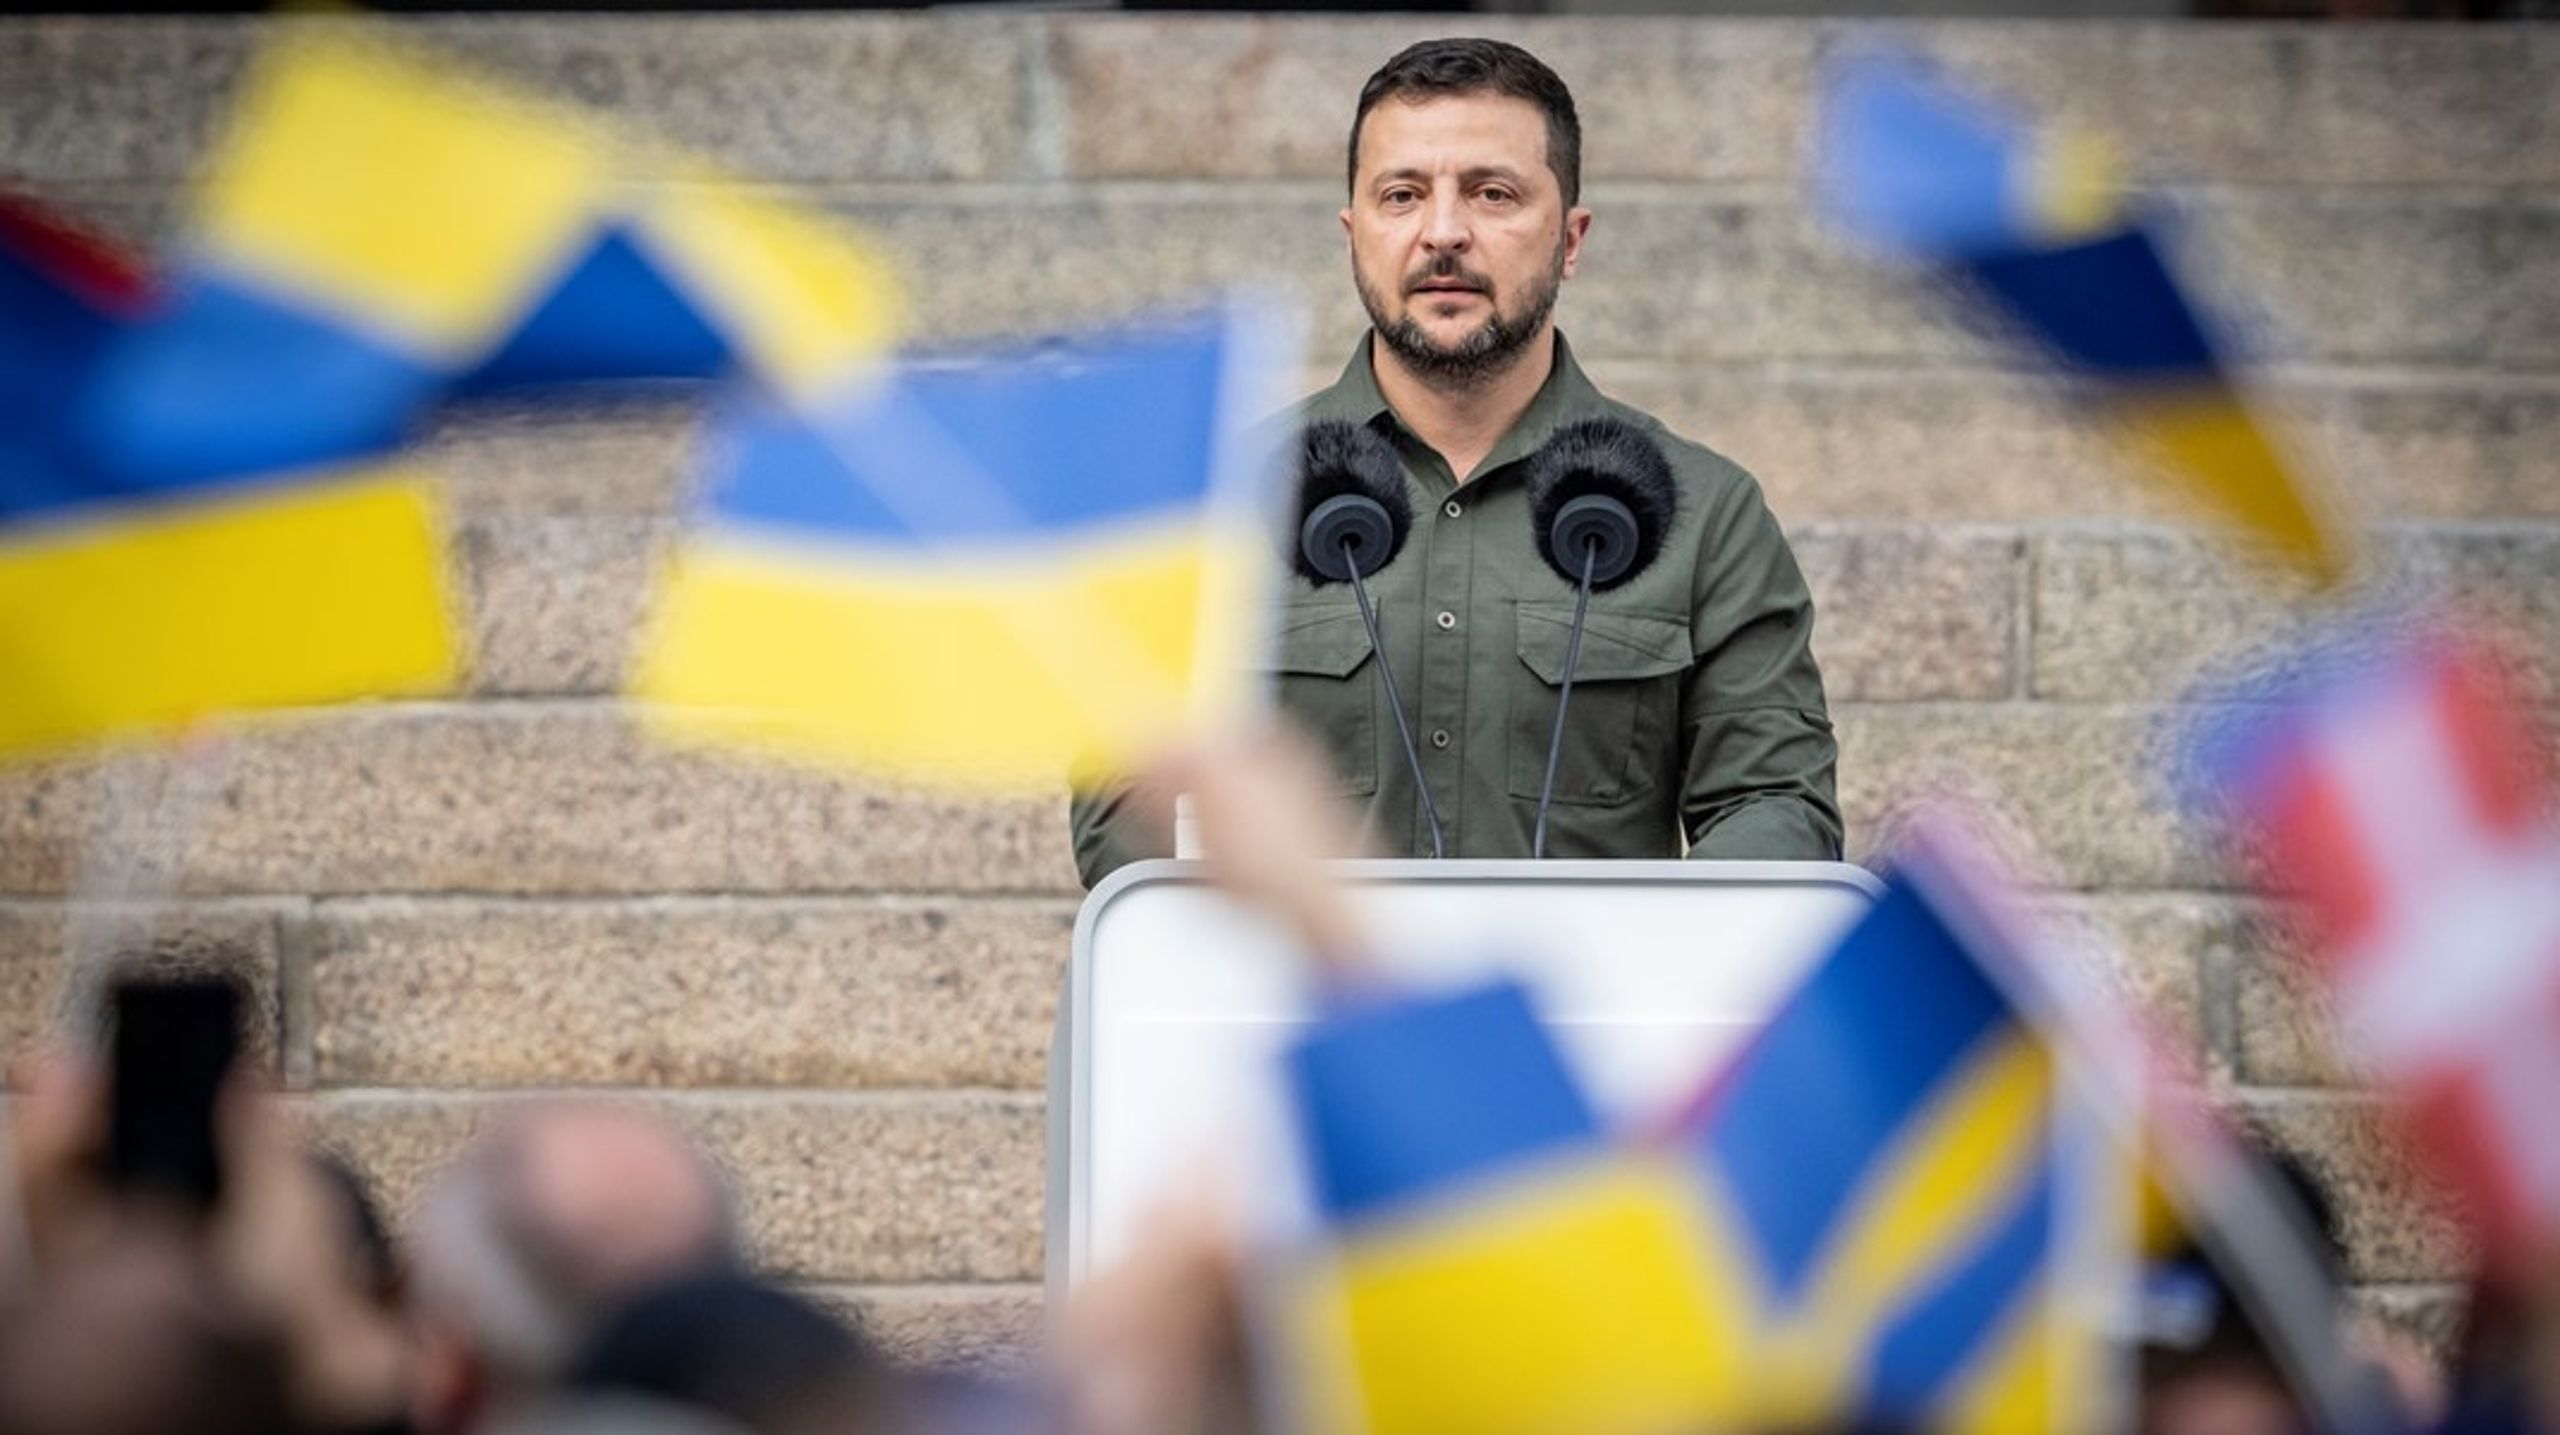 <div><div><div>Ukraines præsident Volodymyr Zelenskyj holdt tale foran trapperne til Christiansborg i København i forbindelse med sit officielle besøg i Danmark den 21. august 2023.&nbsp;</div></div><div><div><br></div><div><div><div><div></div></div></div></div></div></div><div><div></div></div>